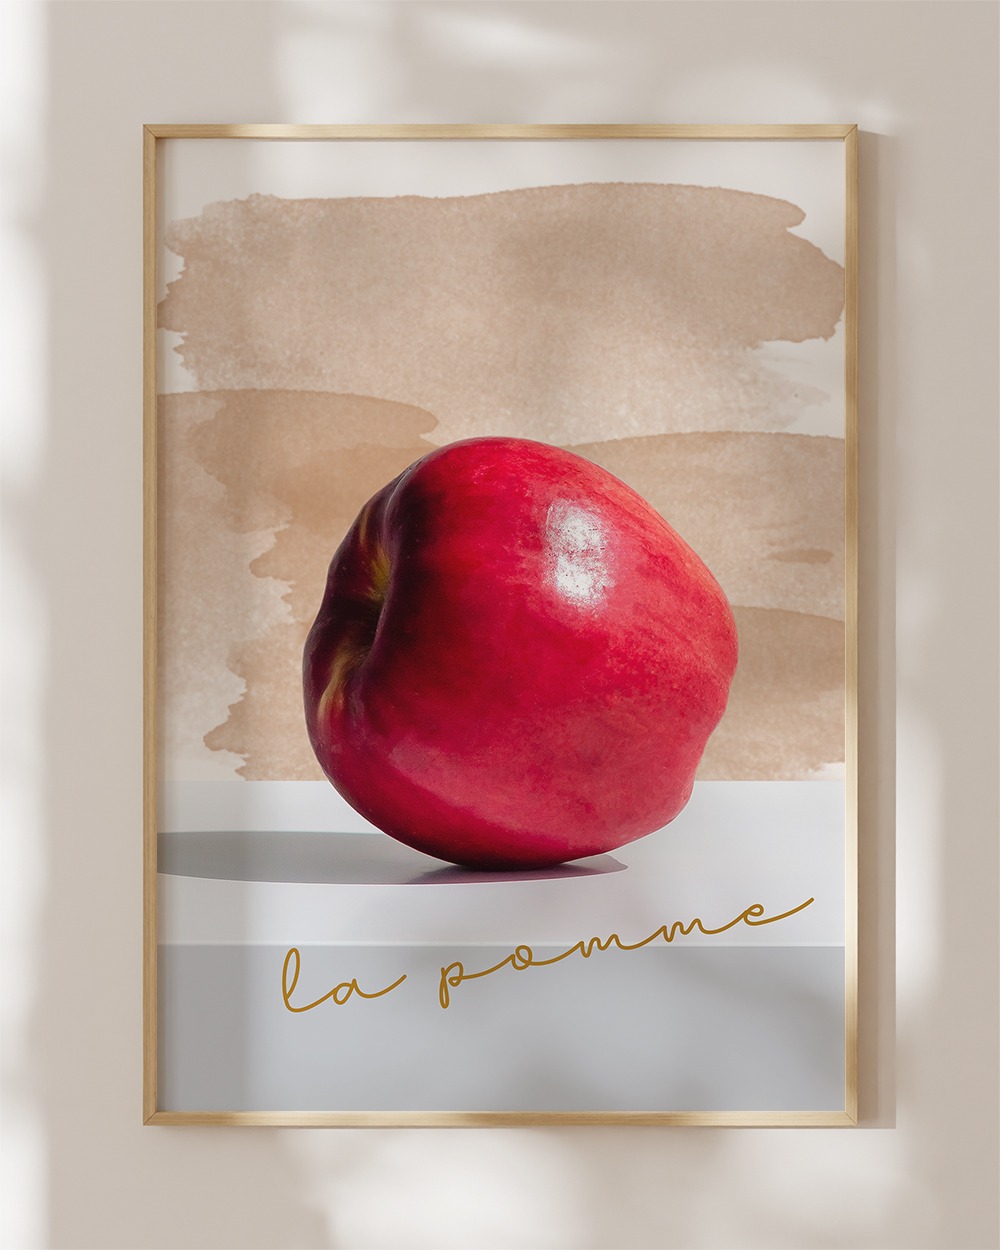 [다복,풍요로움] 풍수지리 사과 No. 20, La pomme(라뽐므)